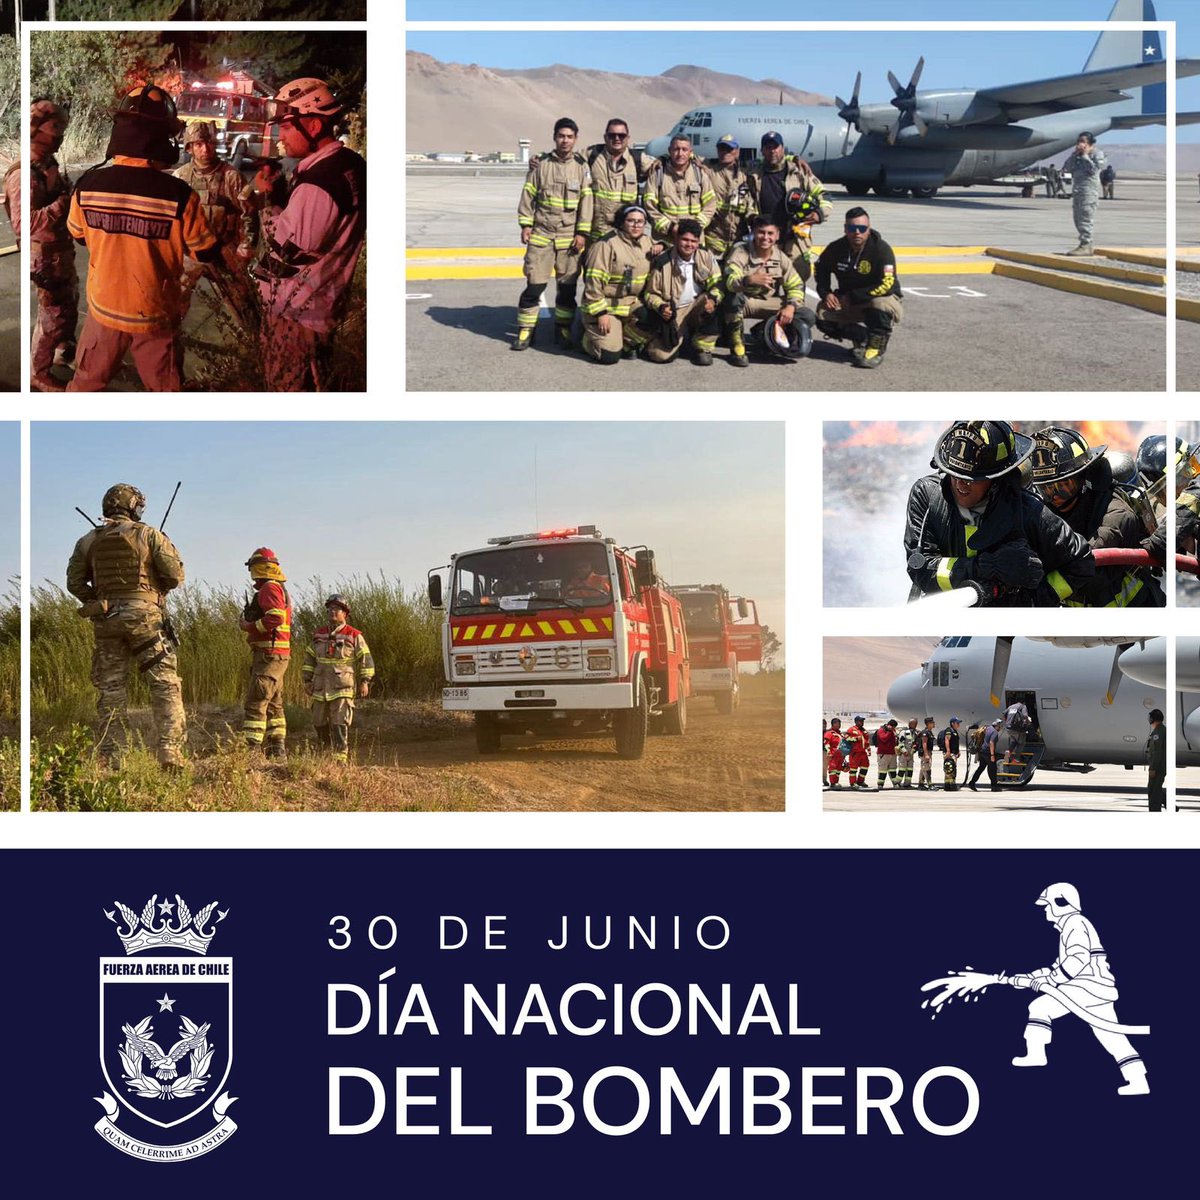 En el #DíaNacionaldelBombero saludamos a todos aquellos valientes voluntarios, que con su labor y espíritu de compromiso ponen en riesgo sus vidas para salvar a la comunidad en la extinción de incendios, rescate de personas y la protección de espacios ambientales.